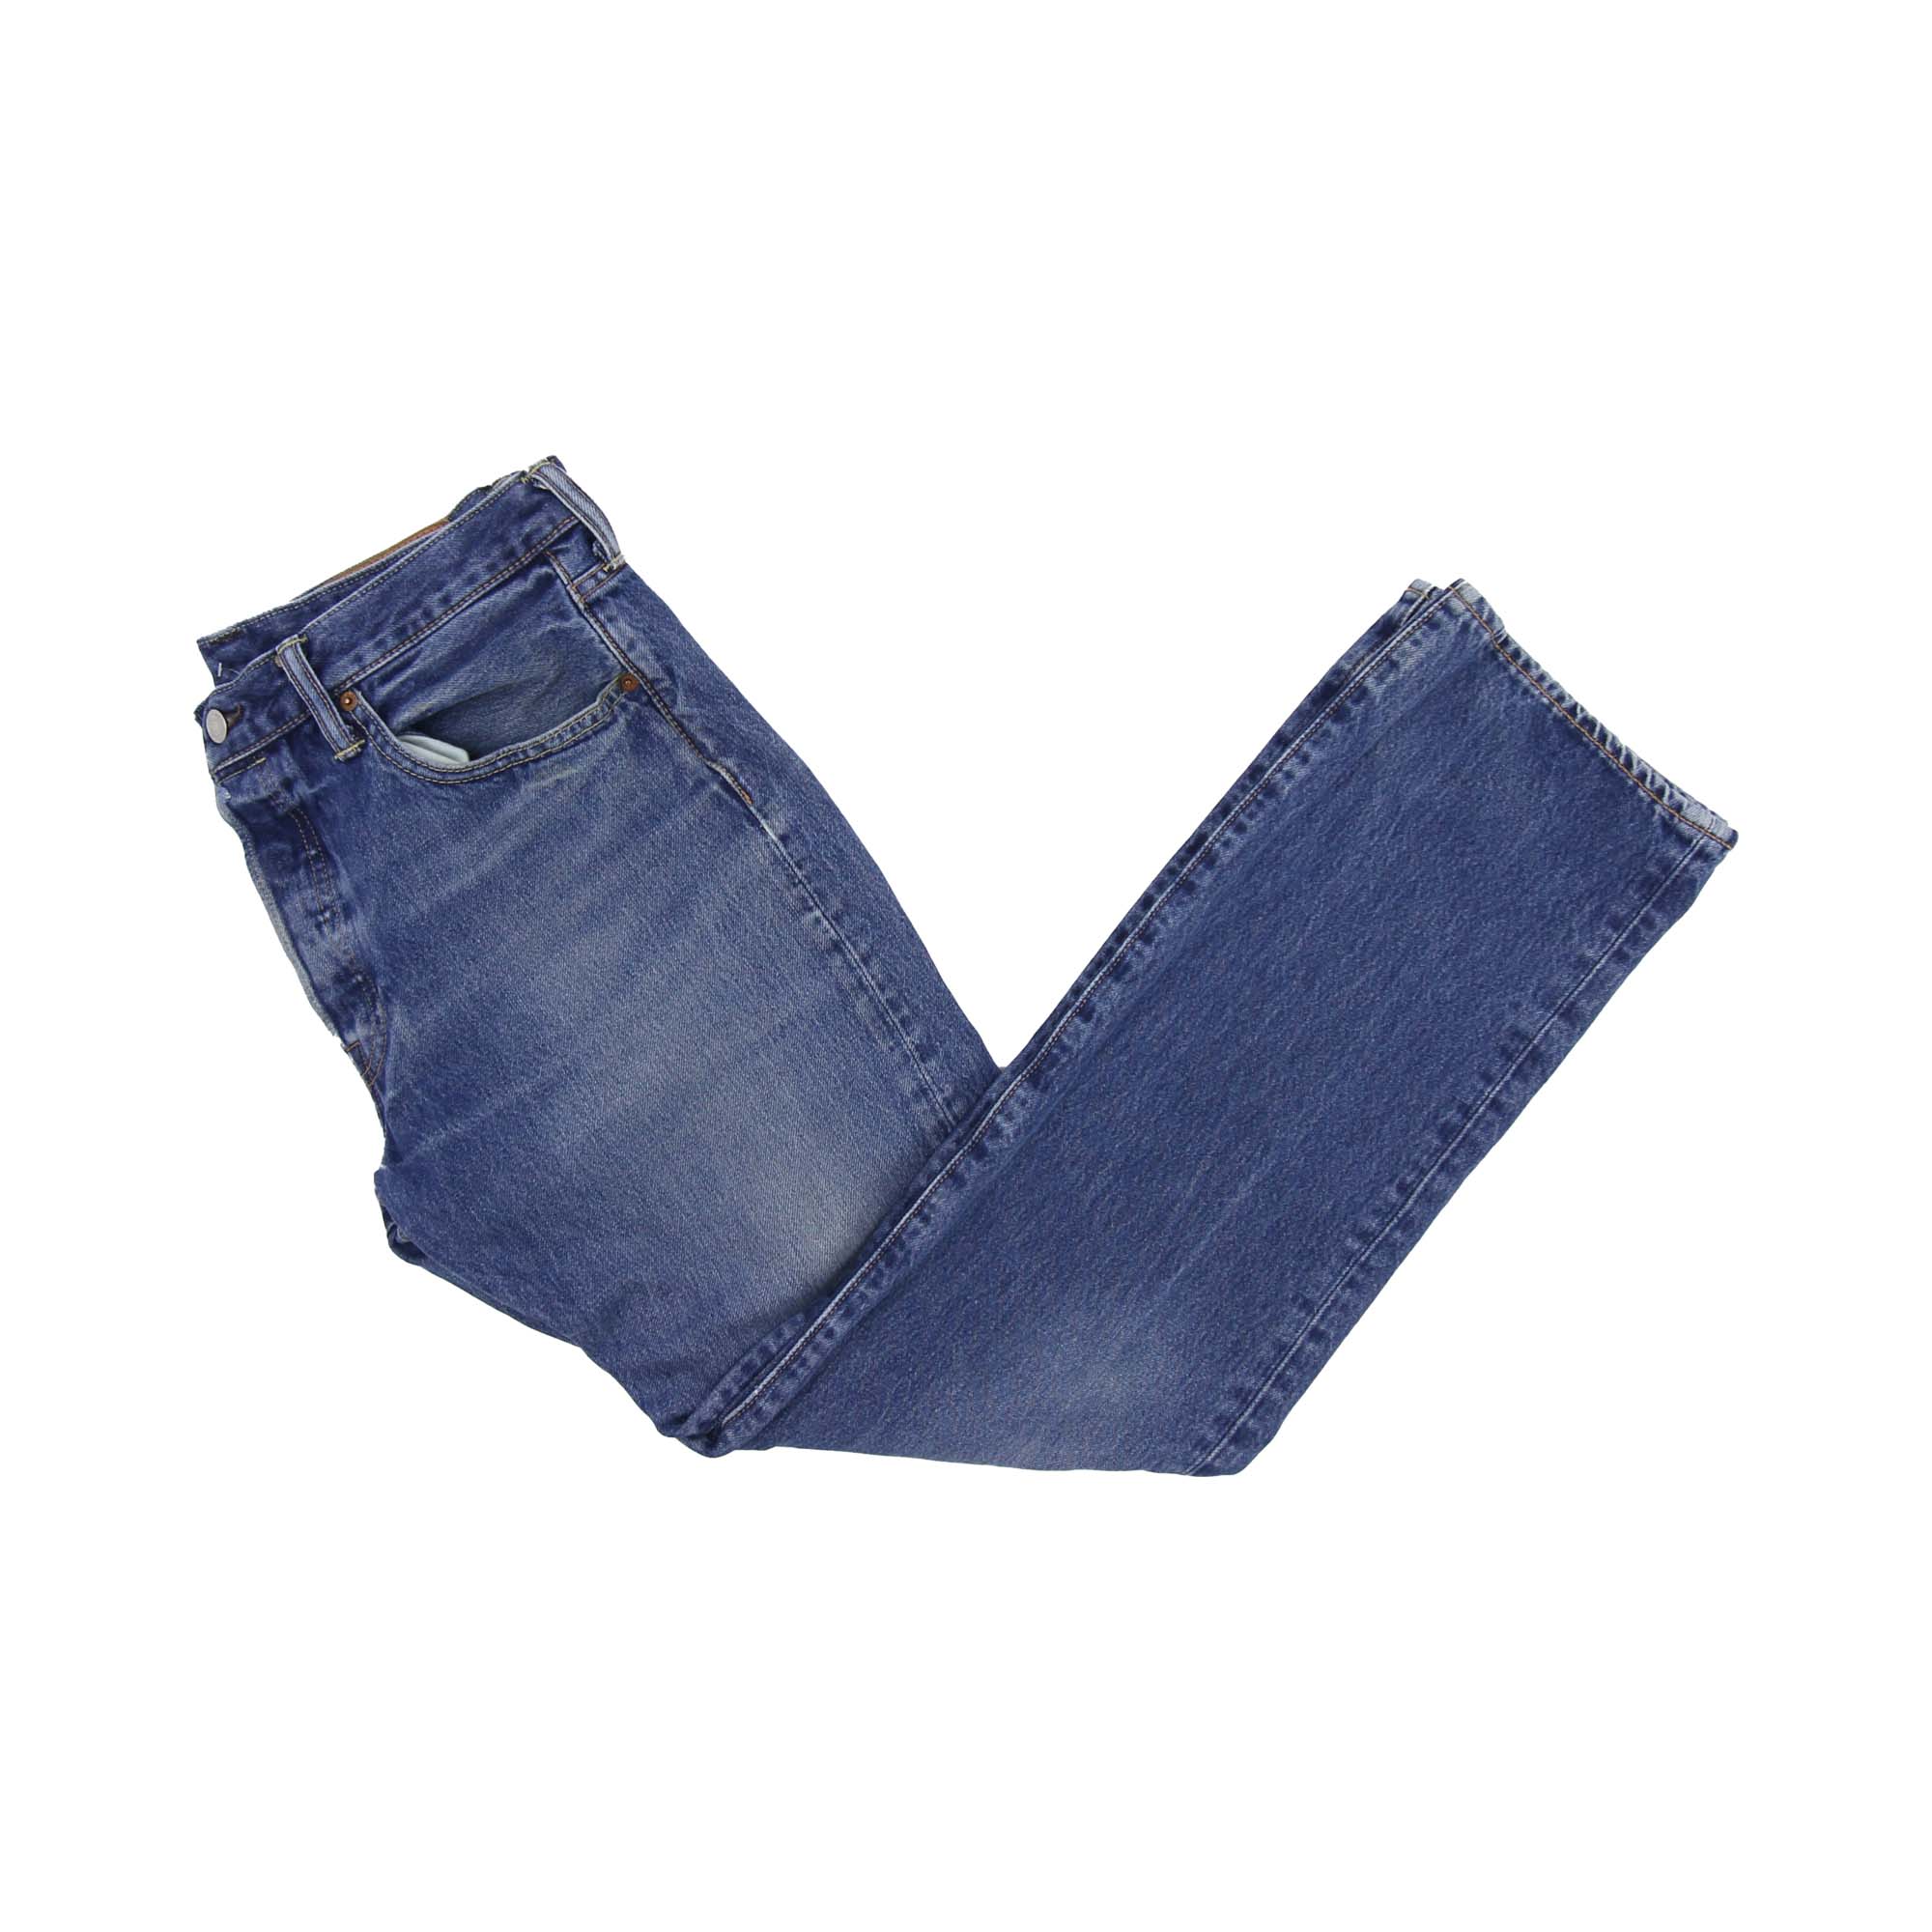 Levi's 501 Denim Jeans - W33 L32